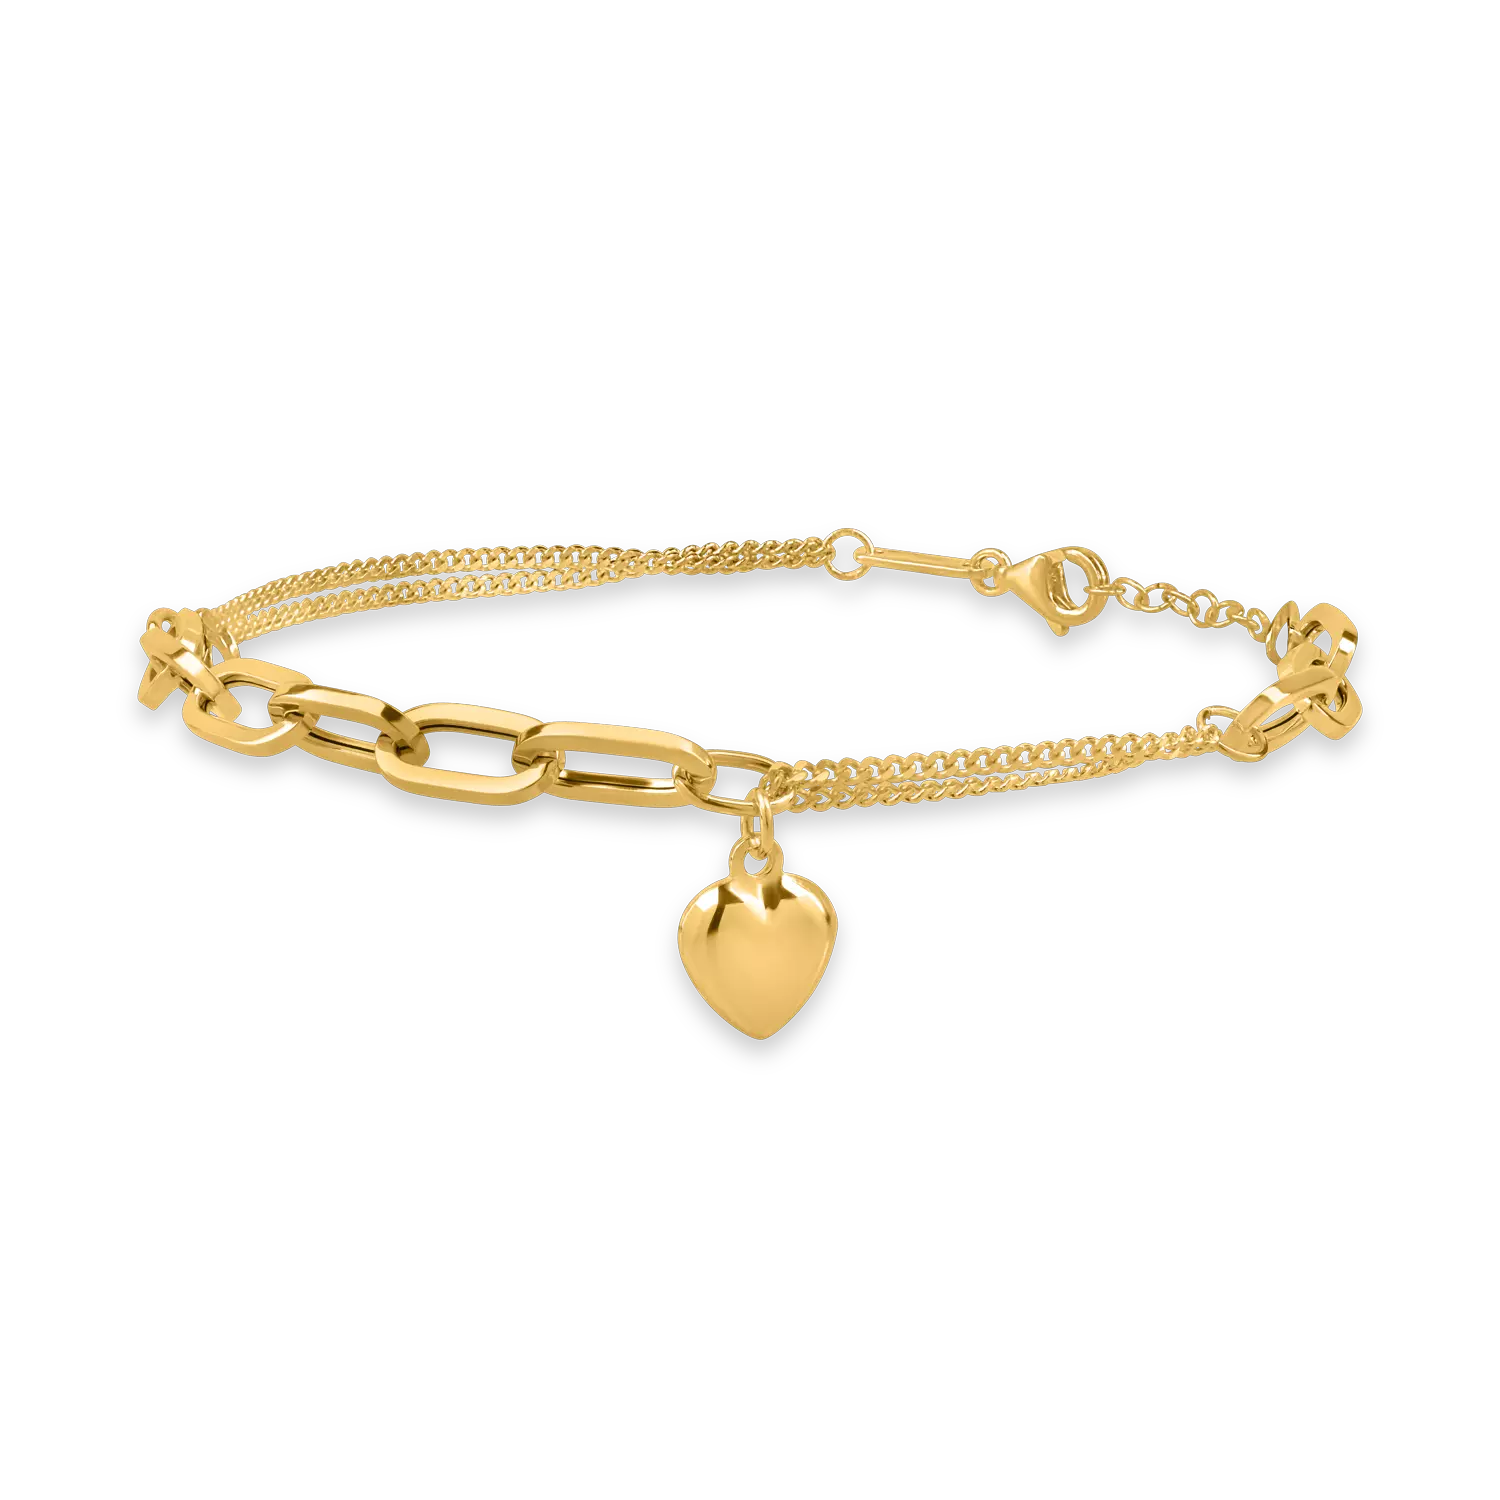 Łańcuszek i bransoletka w kształcie serca z żółtego złota